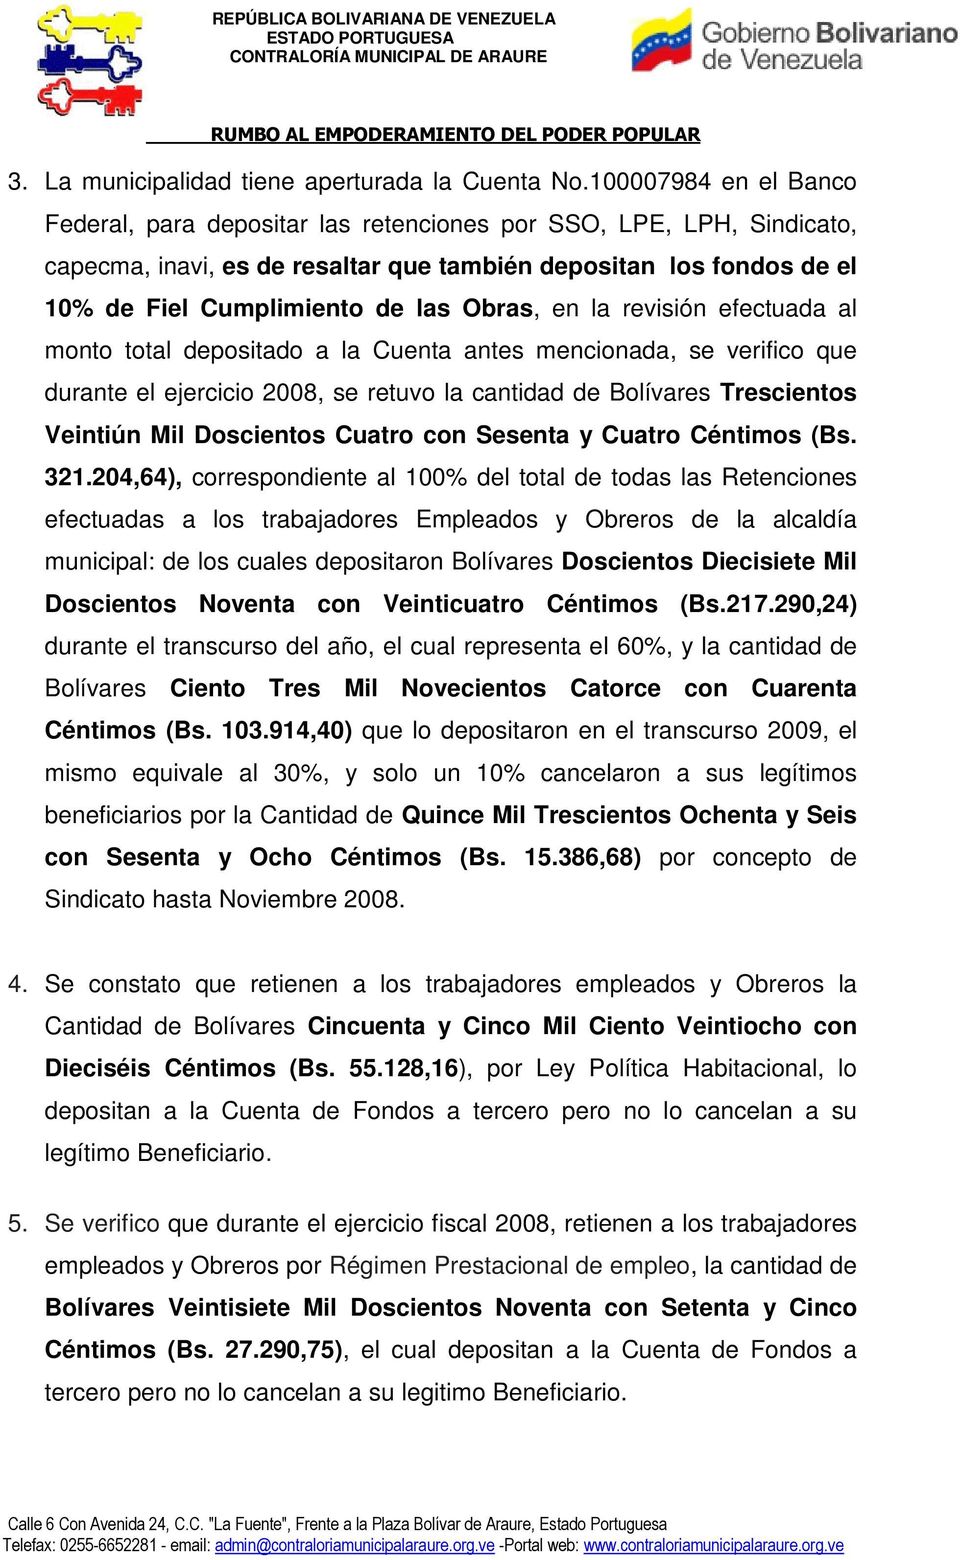 Obras, en la revisión efectuada al monto total depositado a la Cuenta antes mencionada, se verifico que durante el ejercicio 2008, se retuvo la cantidad de Bolívares Trescientos Veintiún Mil